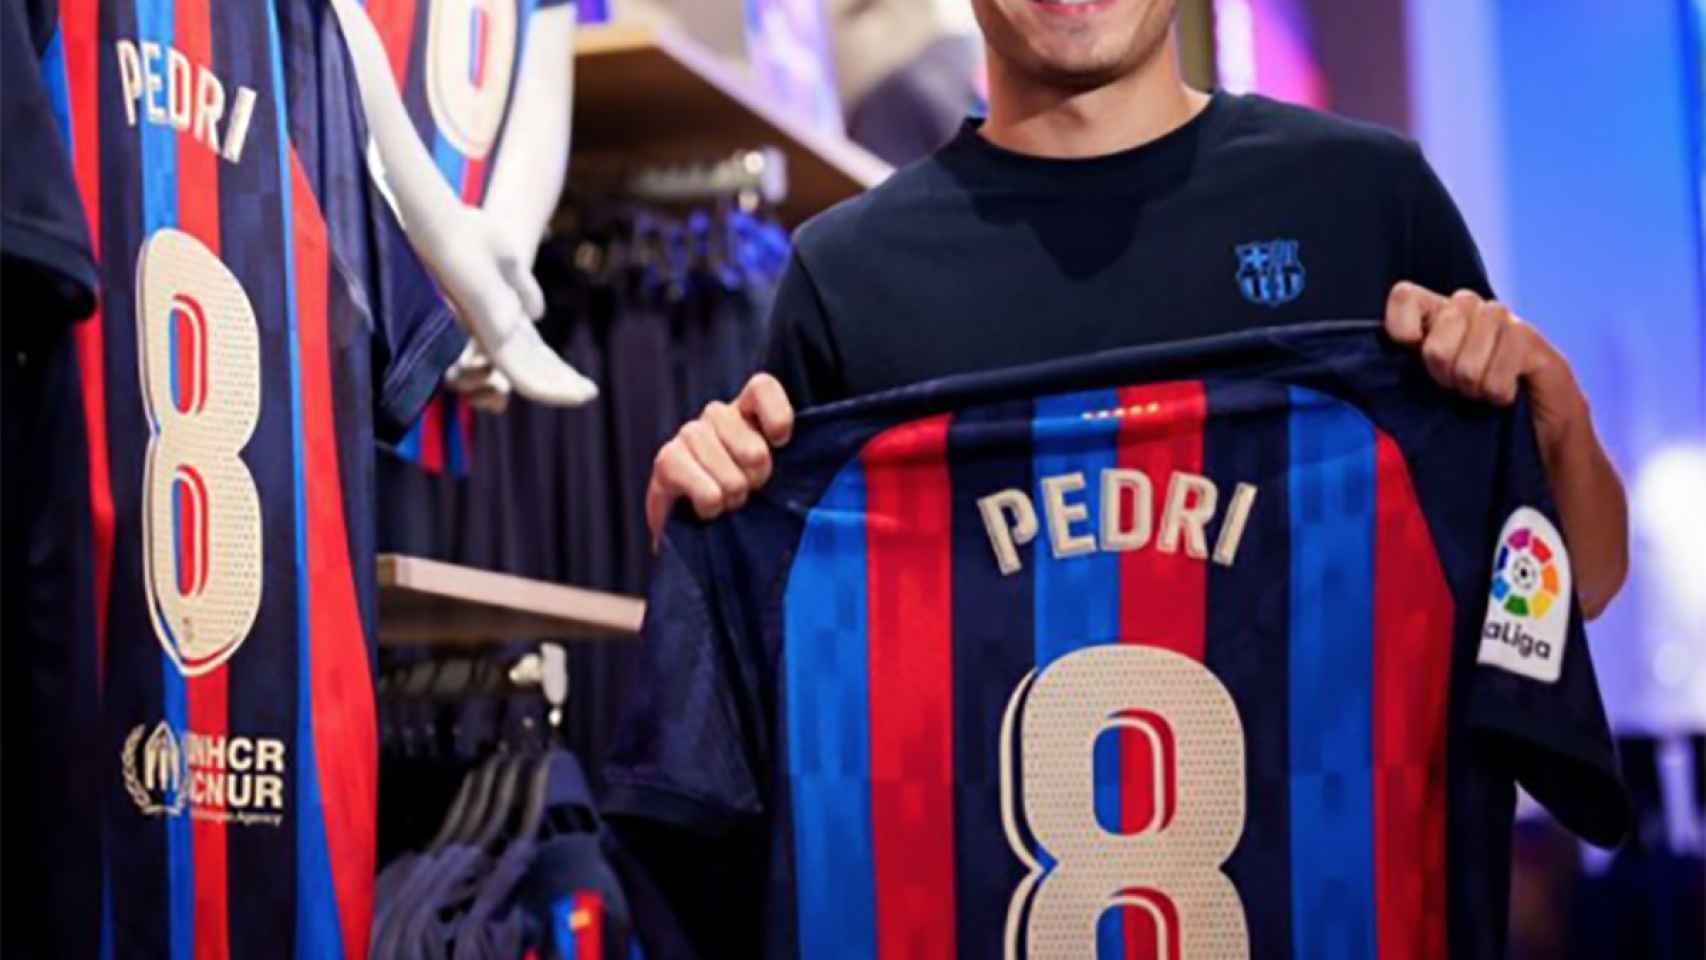 Pedri posa con su nueva camiseta en la Barça Store / FCB